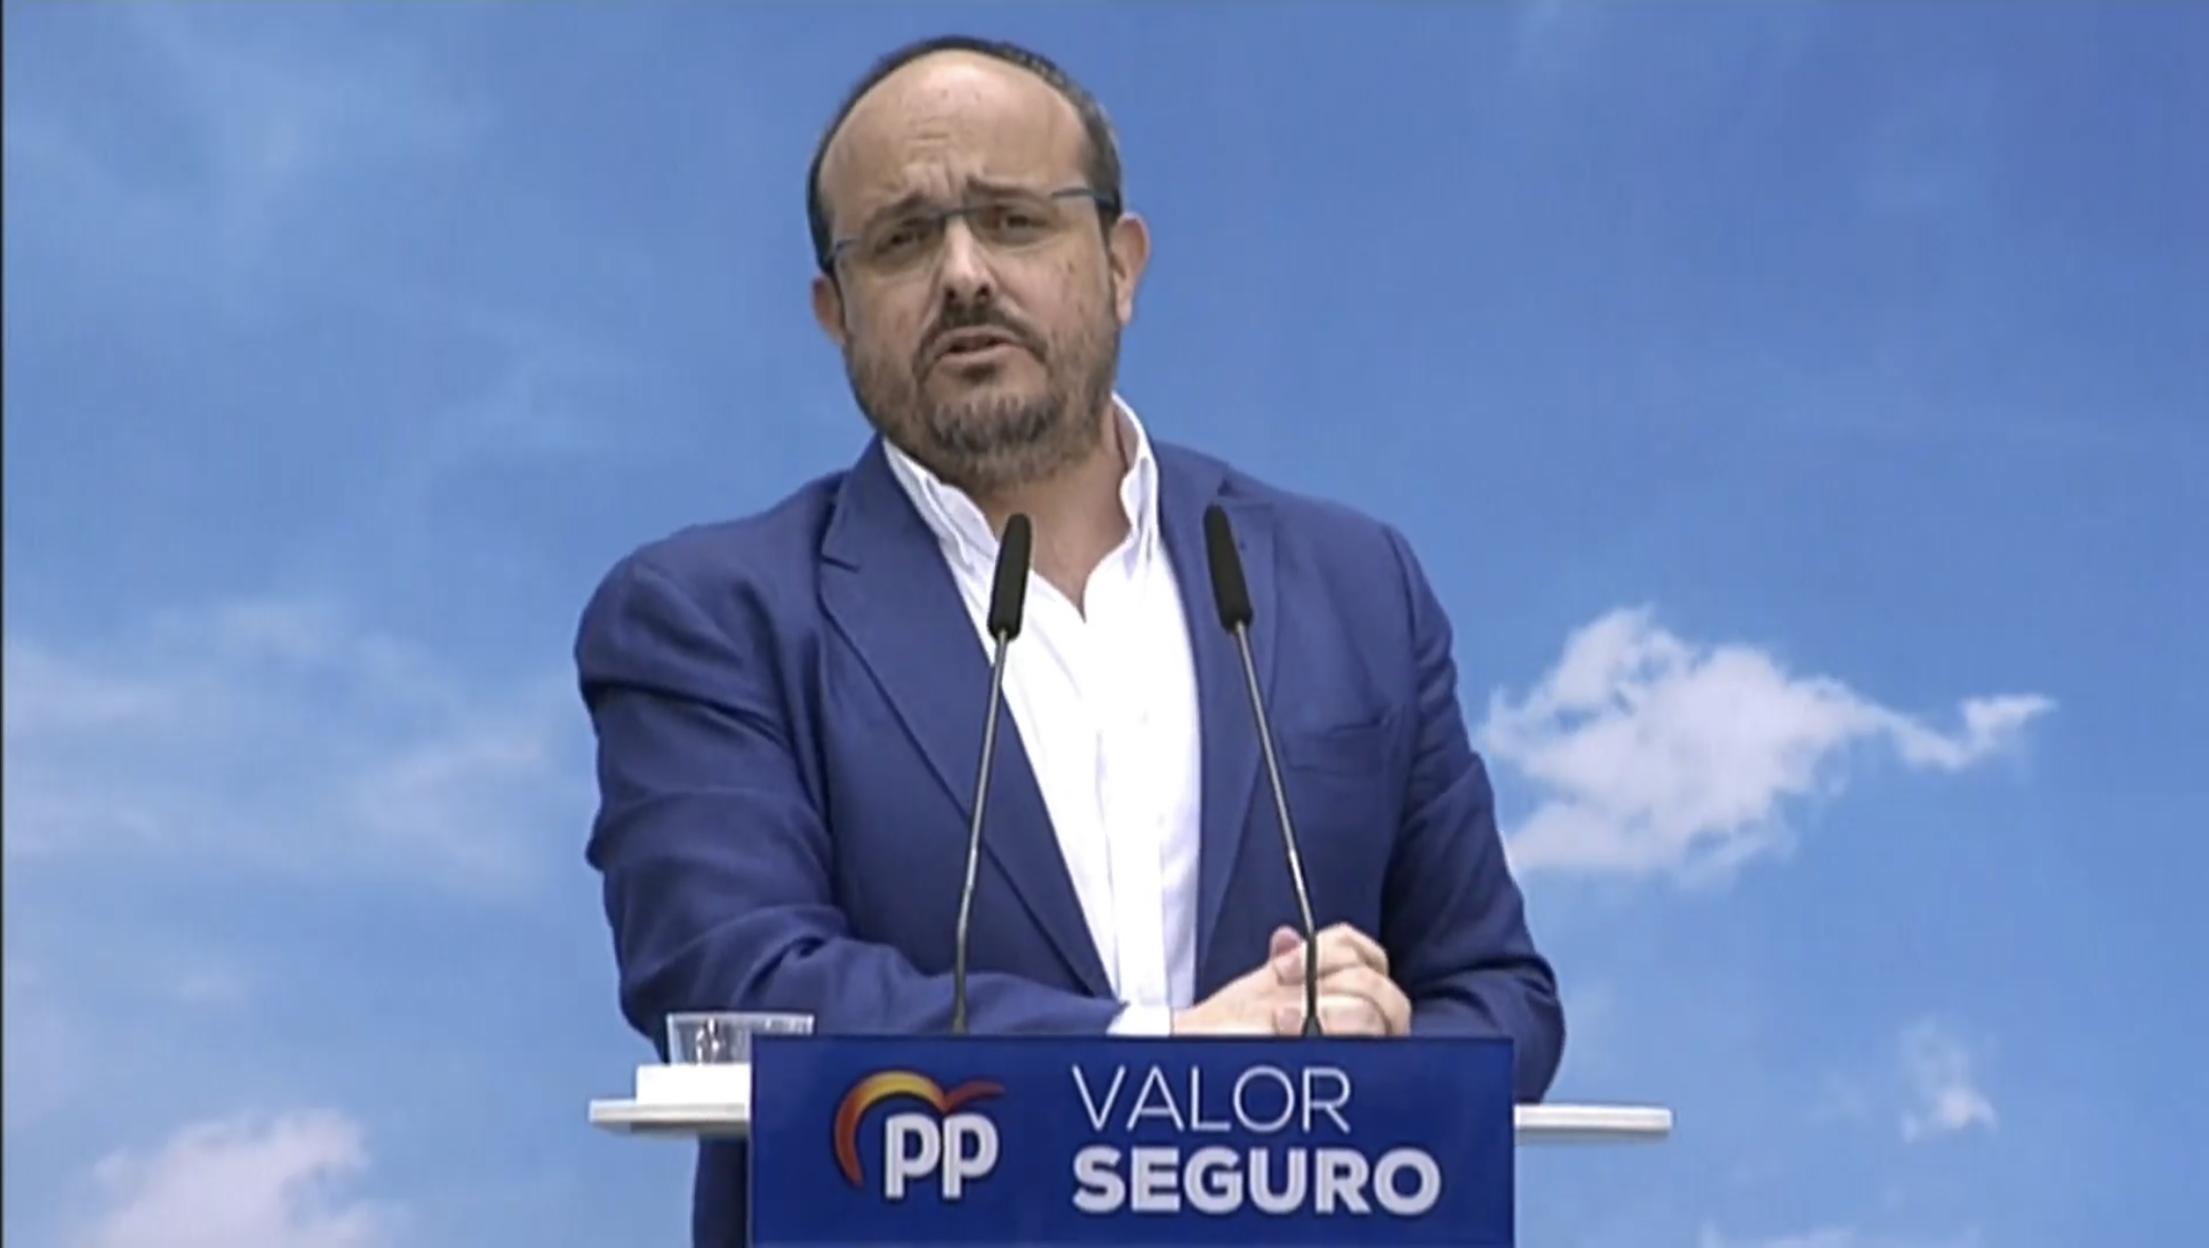 Juan Diego on "“No pasarán” fue y es un símbolo contra el fascismo. Tras “pasar” hubo en España 40 de Este hombre identifica a su partido con ese